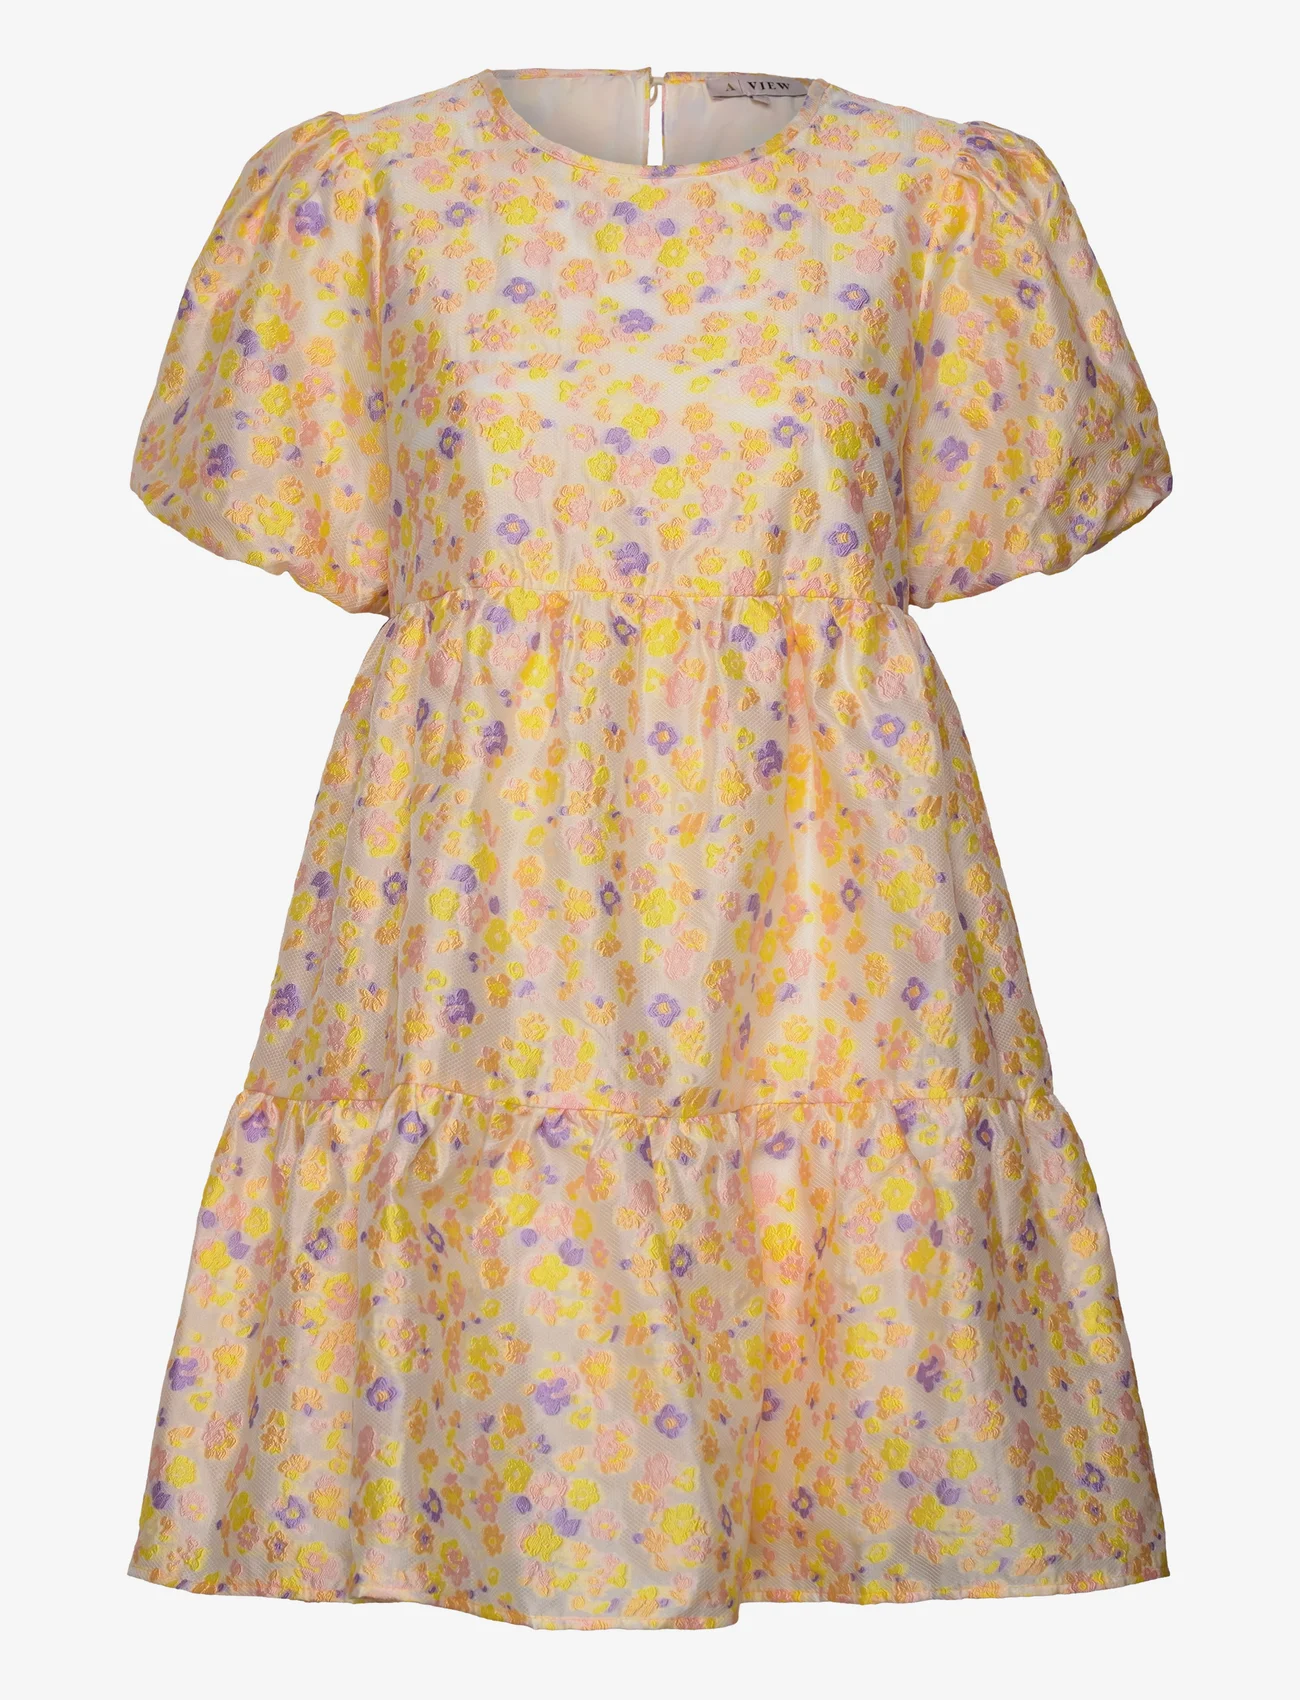 A-View - Flora dress - odzież imprezowa w cenach outletowych - creme w yellow, rose & purple - 0